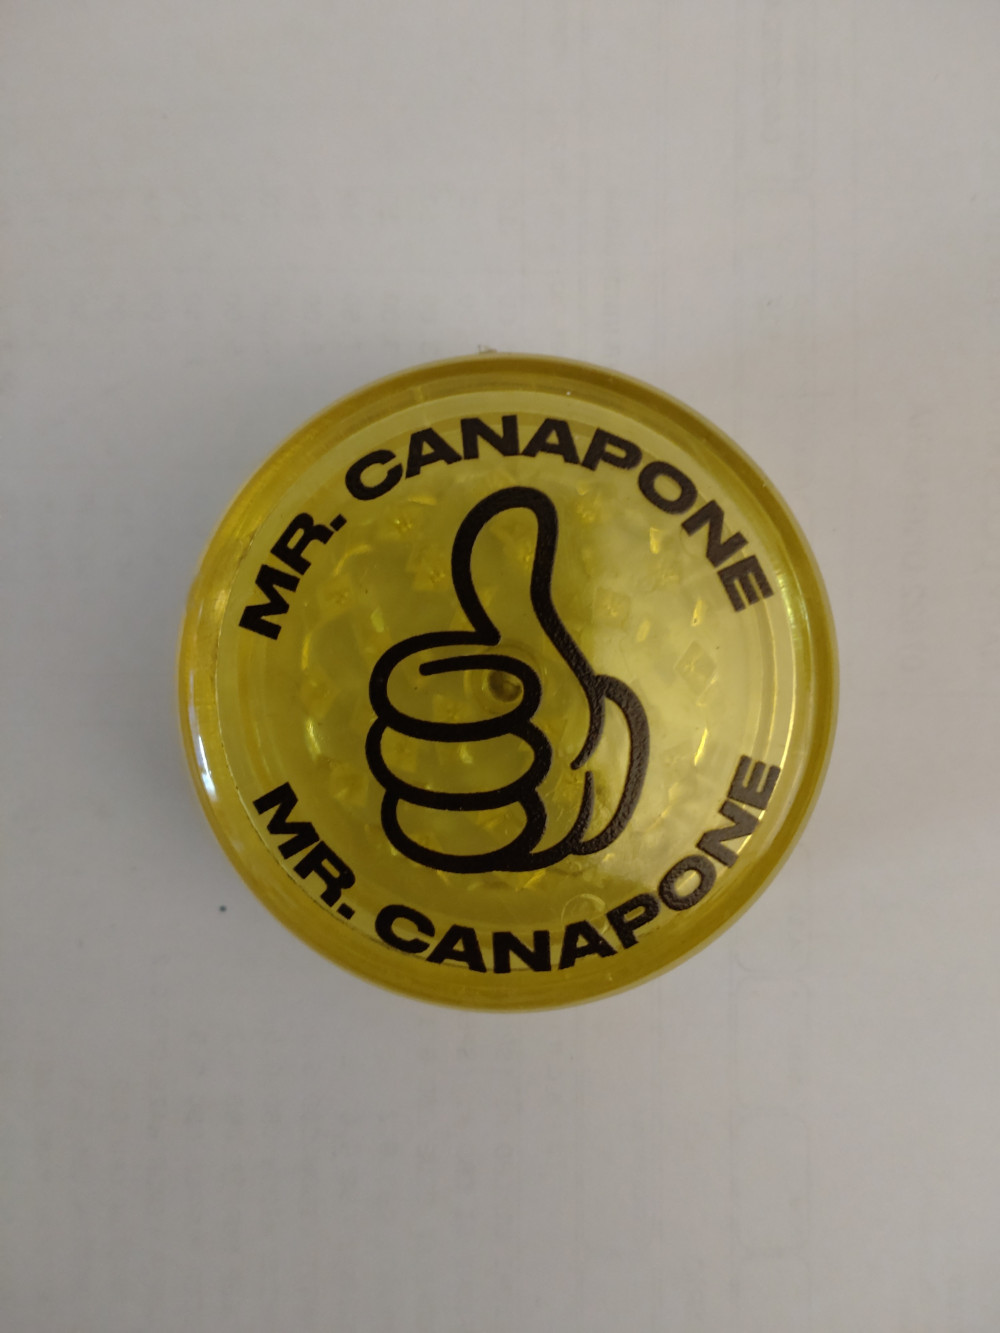 Mr. Canapone daráló /Grinder/ sárga